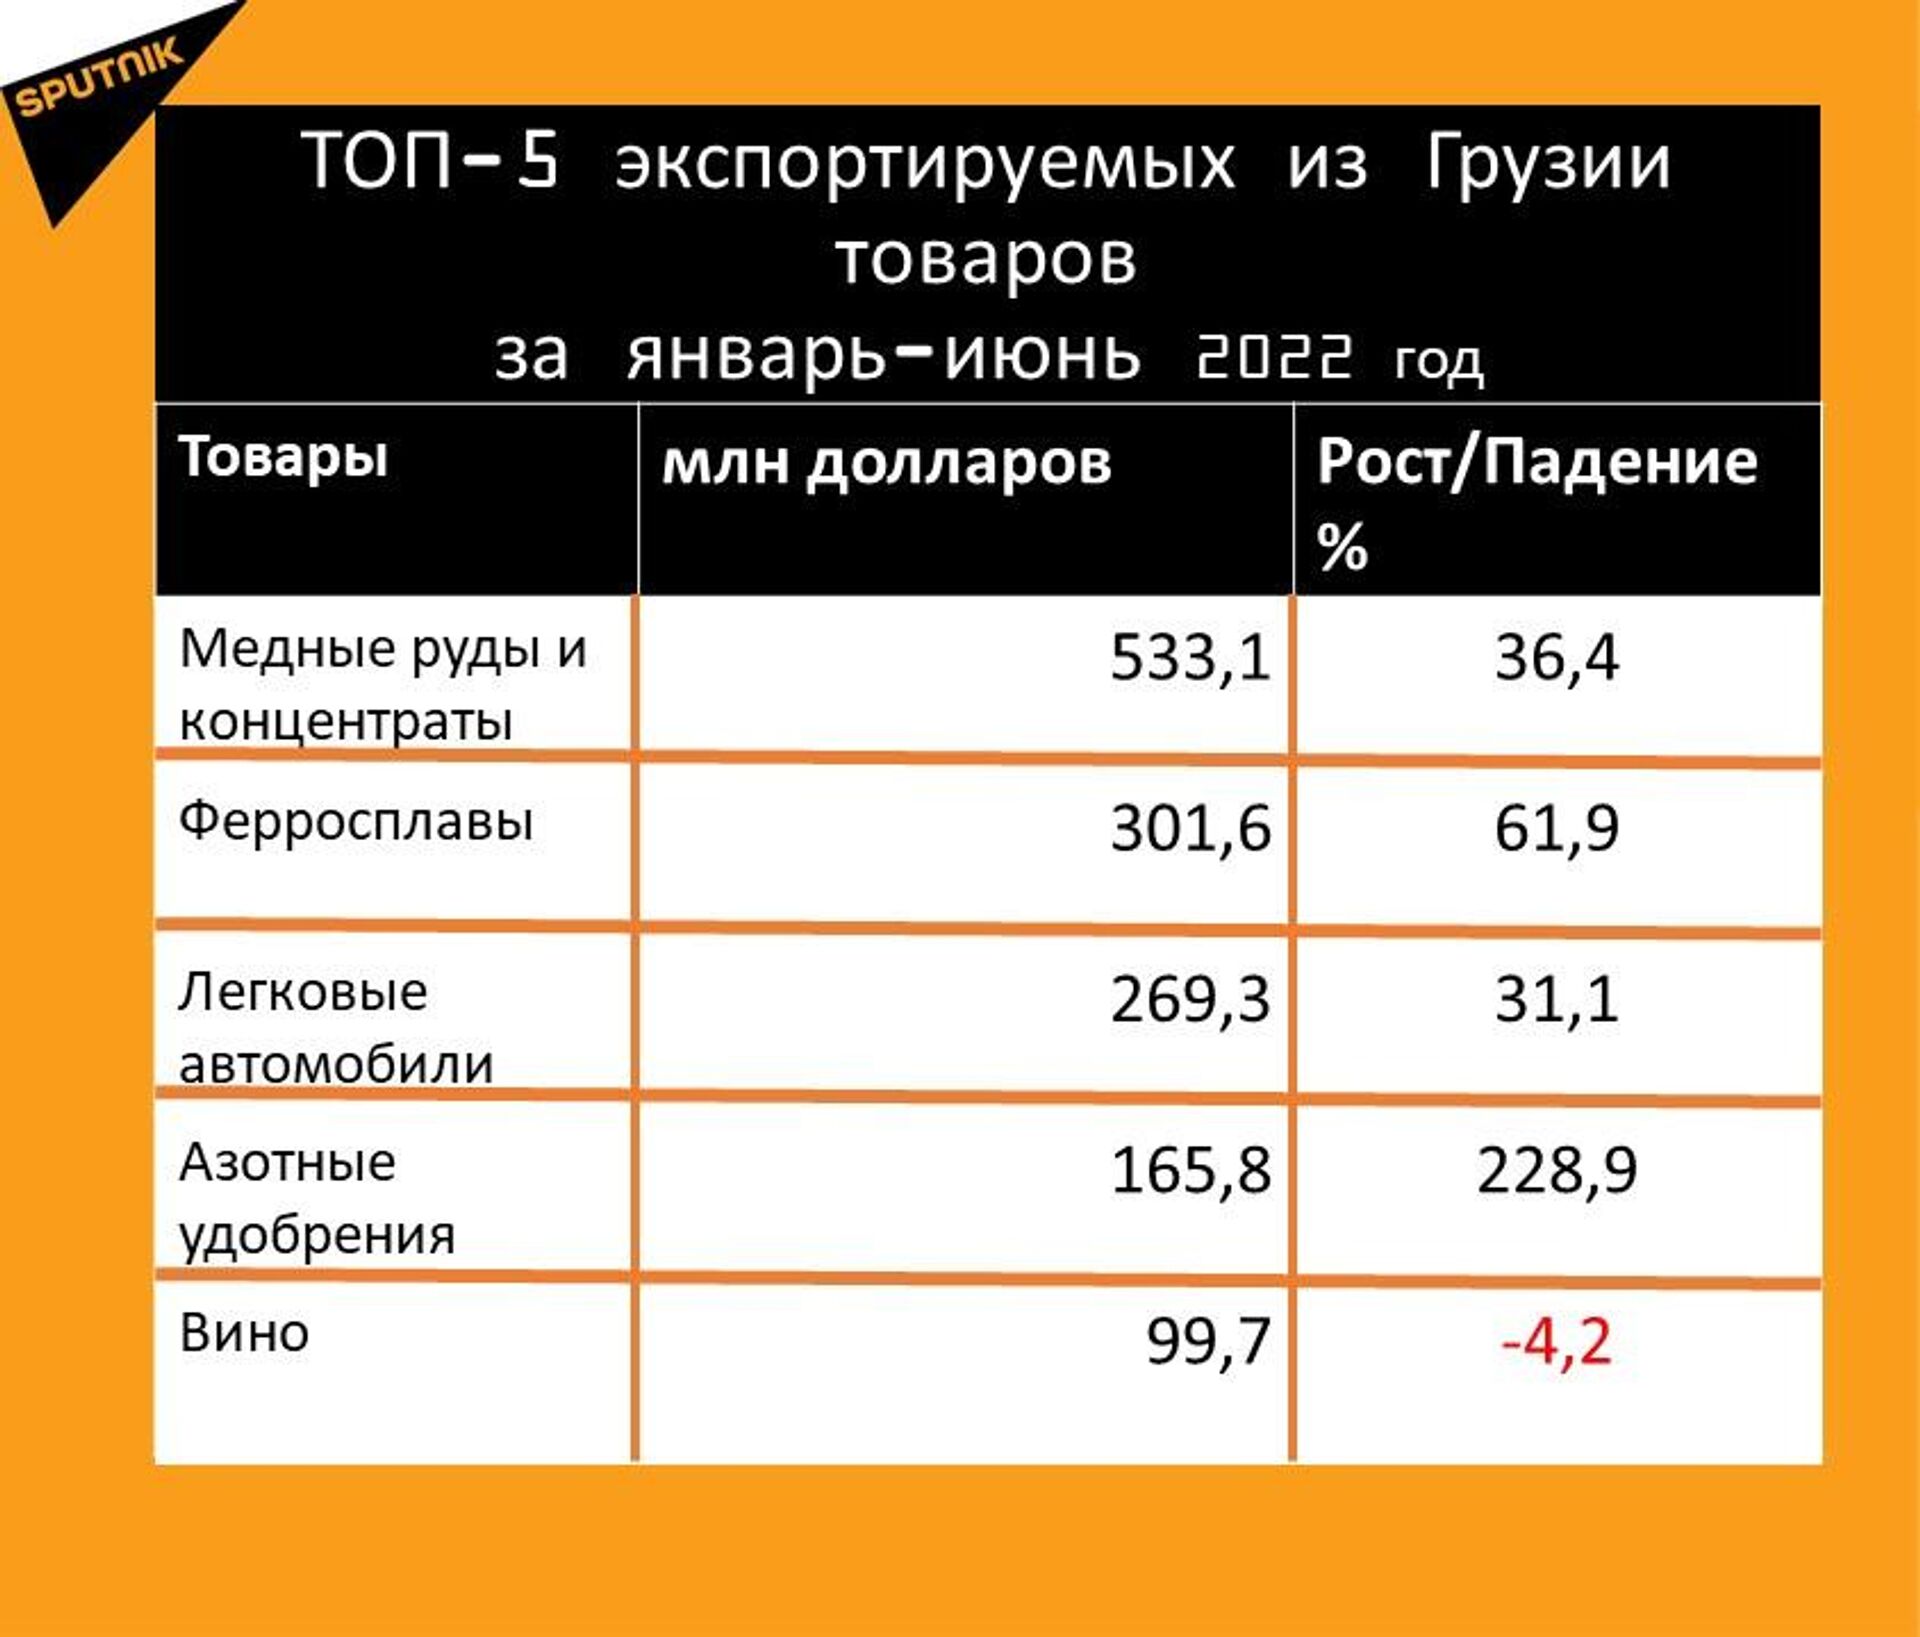 Статистика внешнеторгового оборота Грузии за январь-июнь 2022 года, экспорт - Sputnik Грузия, 1920, 20.07.2022